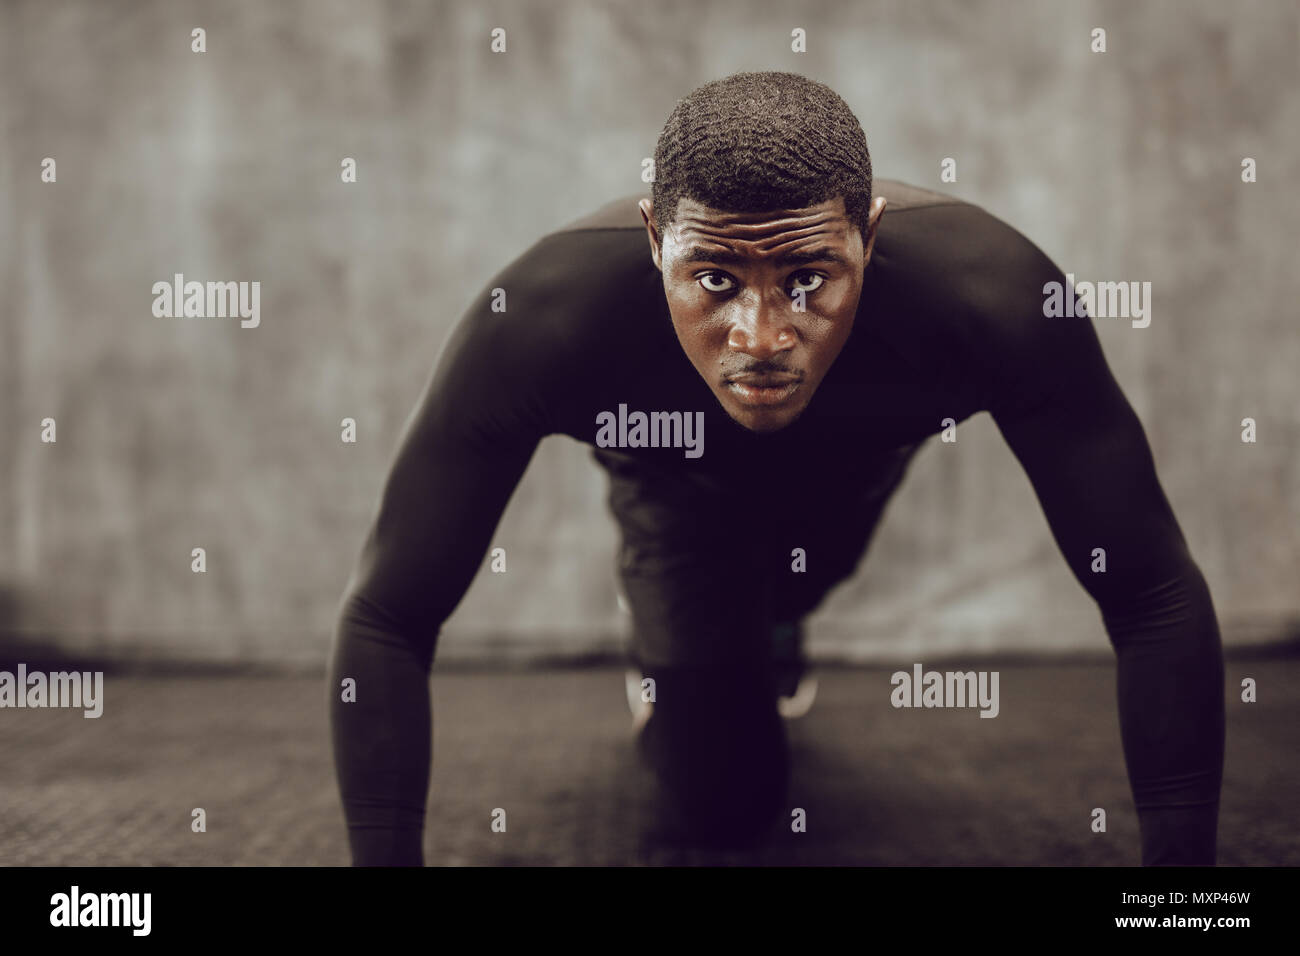 Athletischer Mann tun Push up im Fitnessraum trainieren. Muskulöse Mann in engen schwarzen Outfit tun crossfit Training. Stockfoto